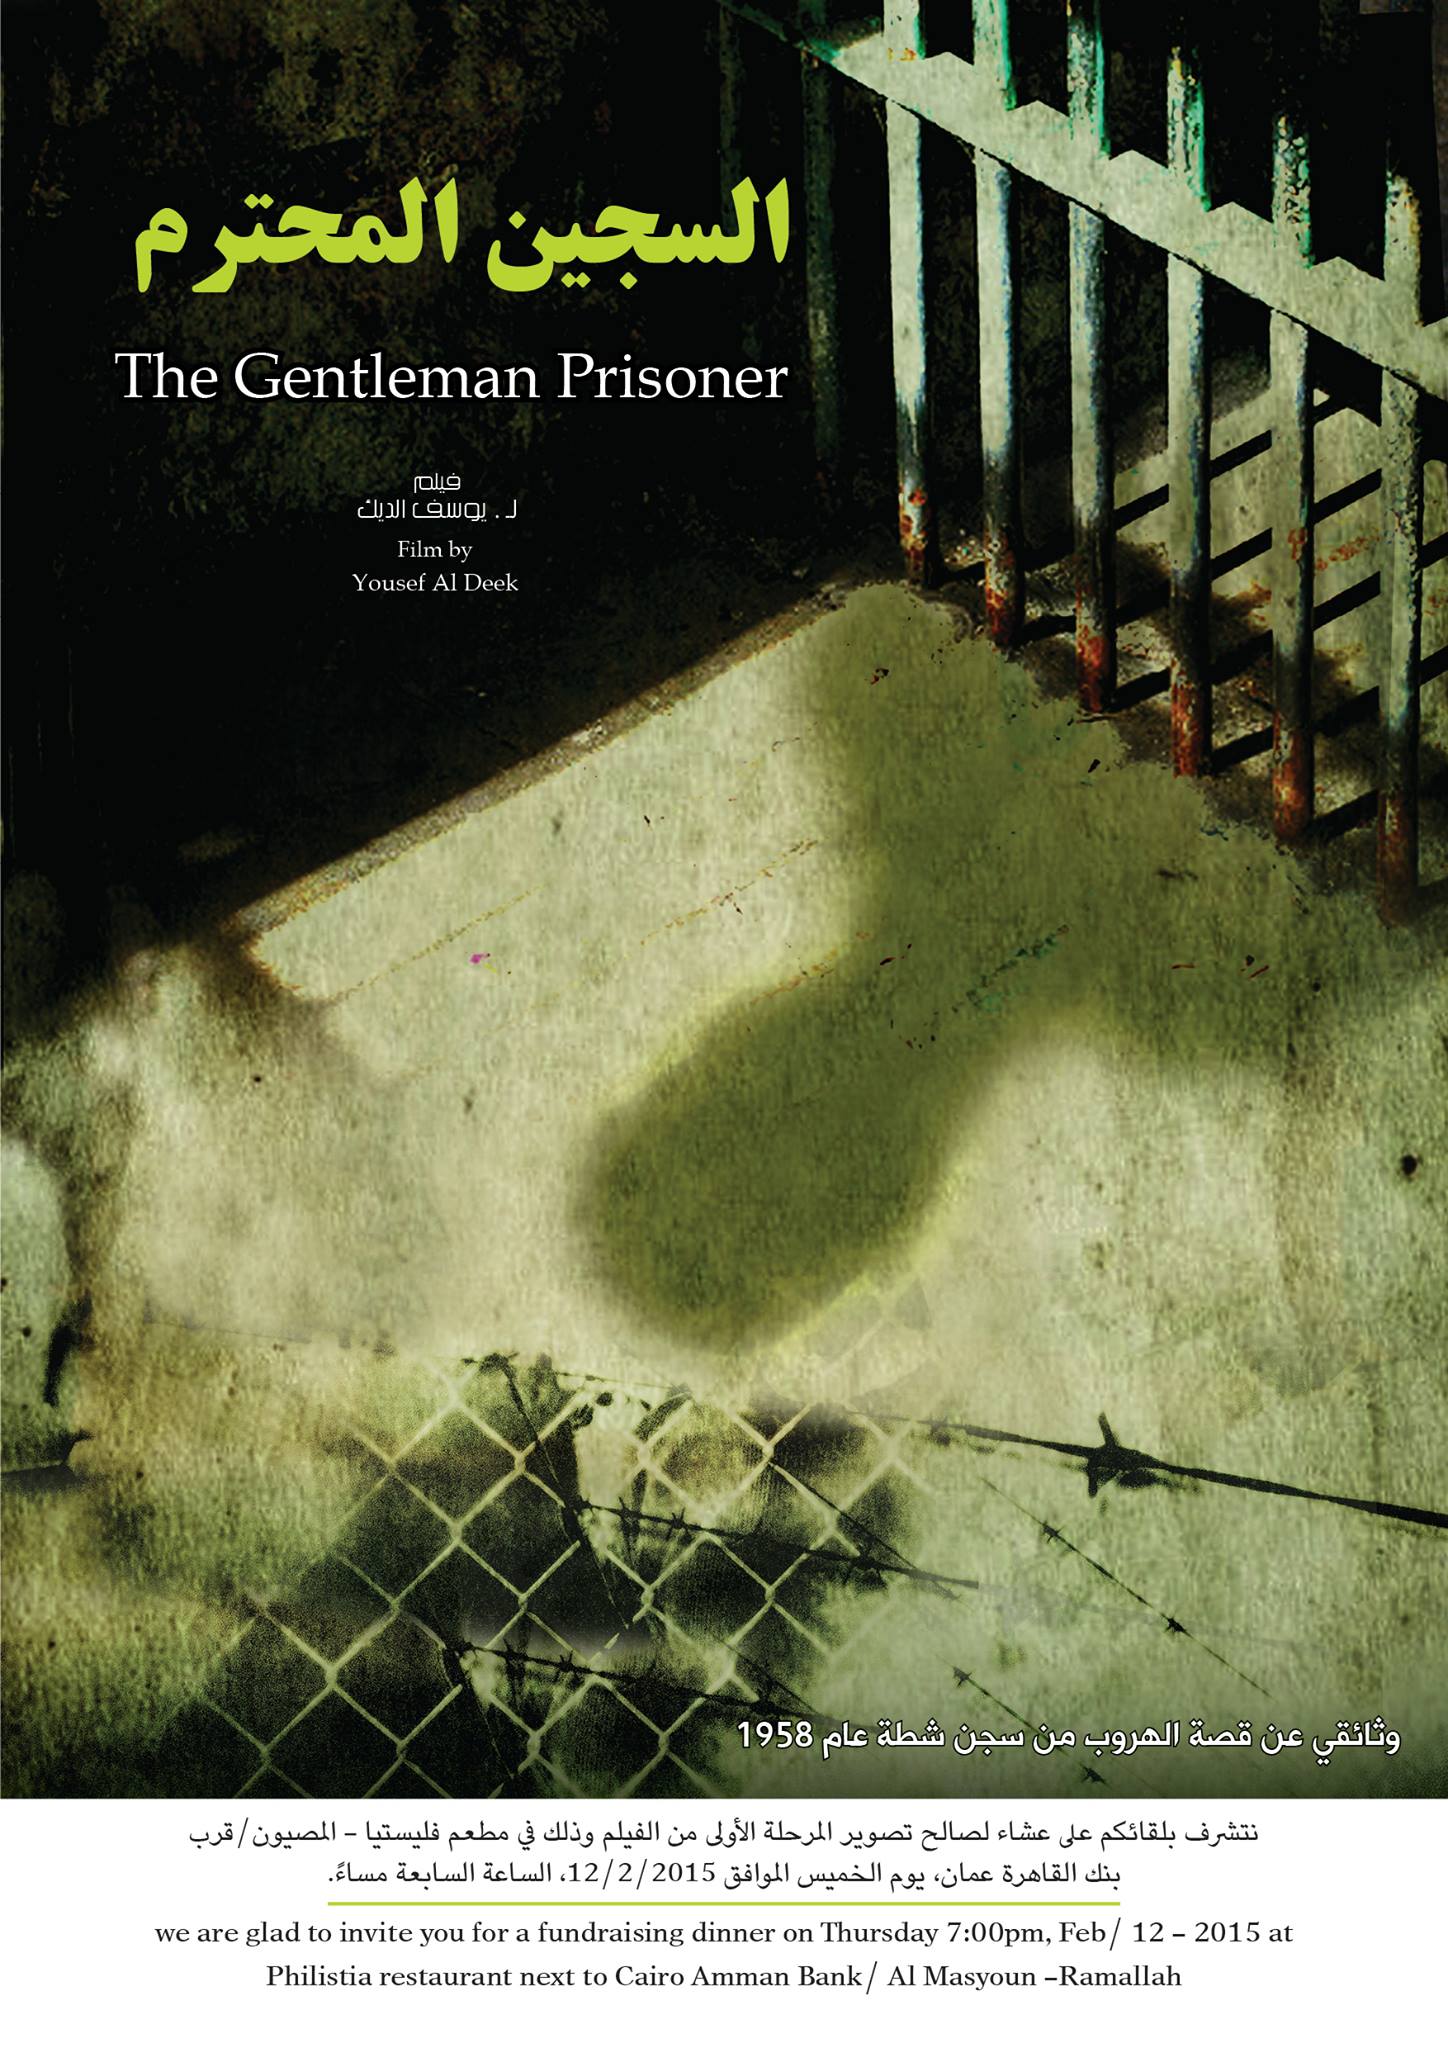 The Gentleman Prisoner